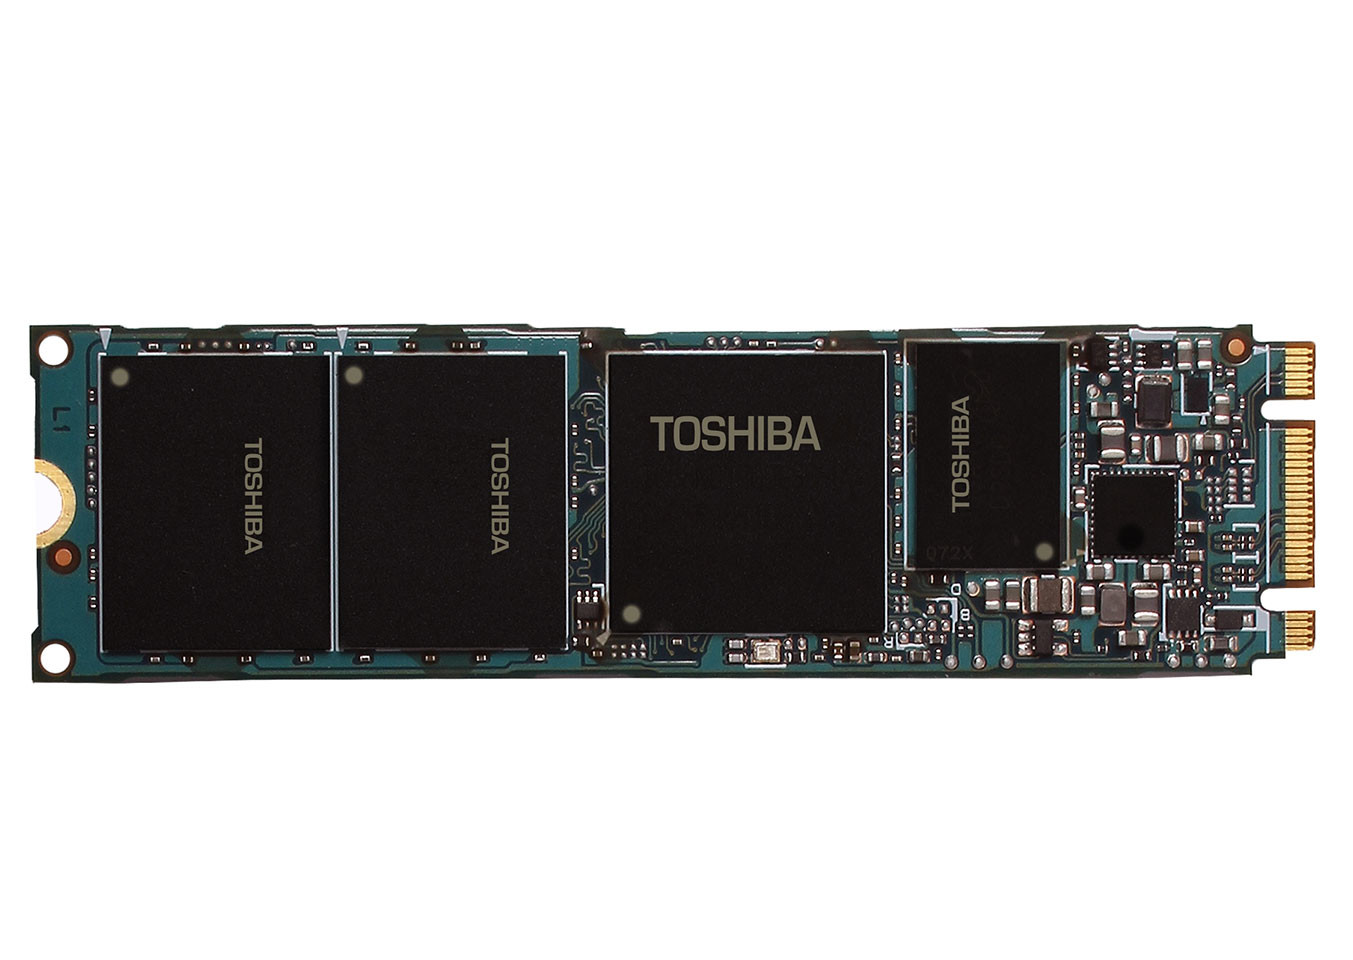 Immagine pubblicata in relazione al seguente contenuto: Toshiba lancia SG5, i primi SSD consumer con memoria NAND TLC a 15nm | Nome immagine: news23815_SSD-Toshiba-SG5_1.jpg